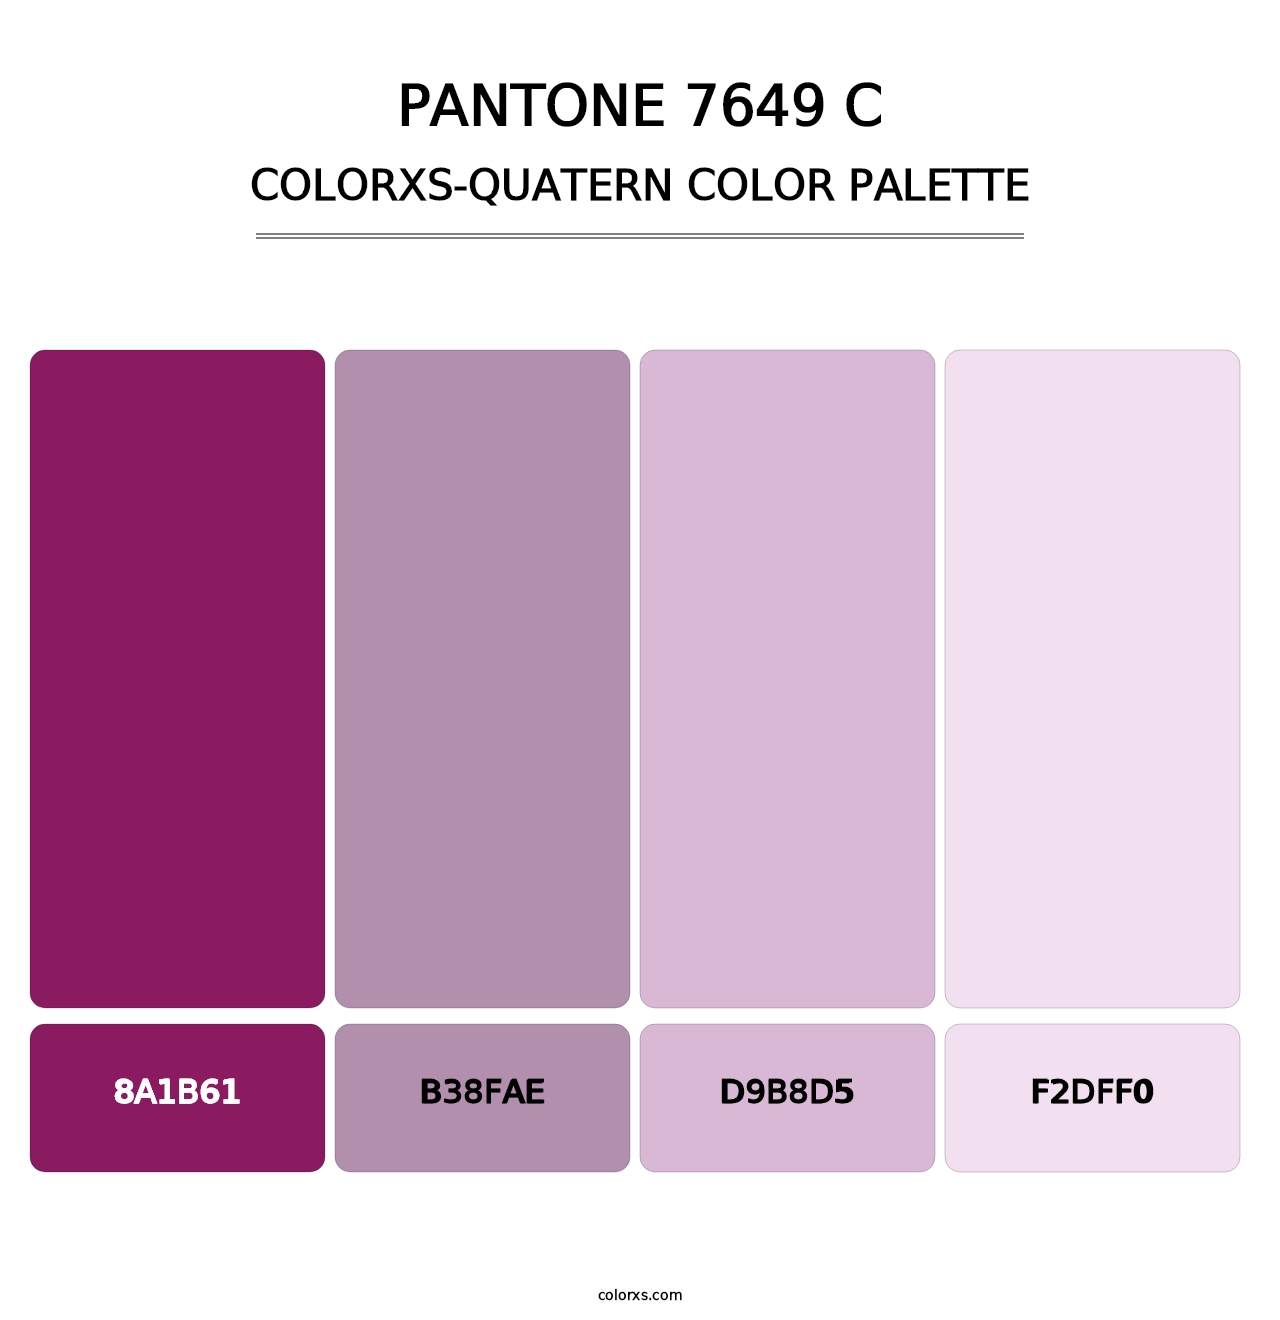 PANTONE 7649 C - Colorxs Quatern Palette